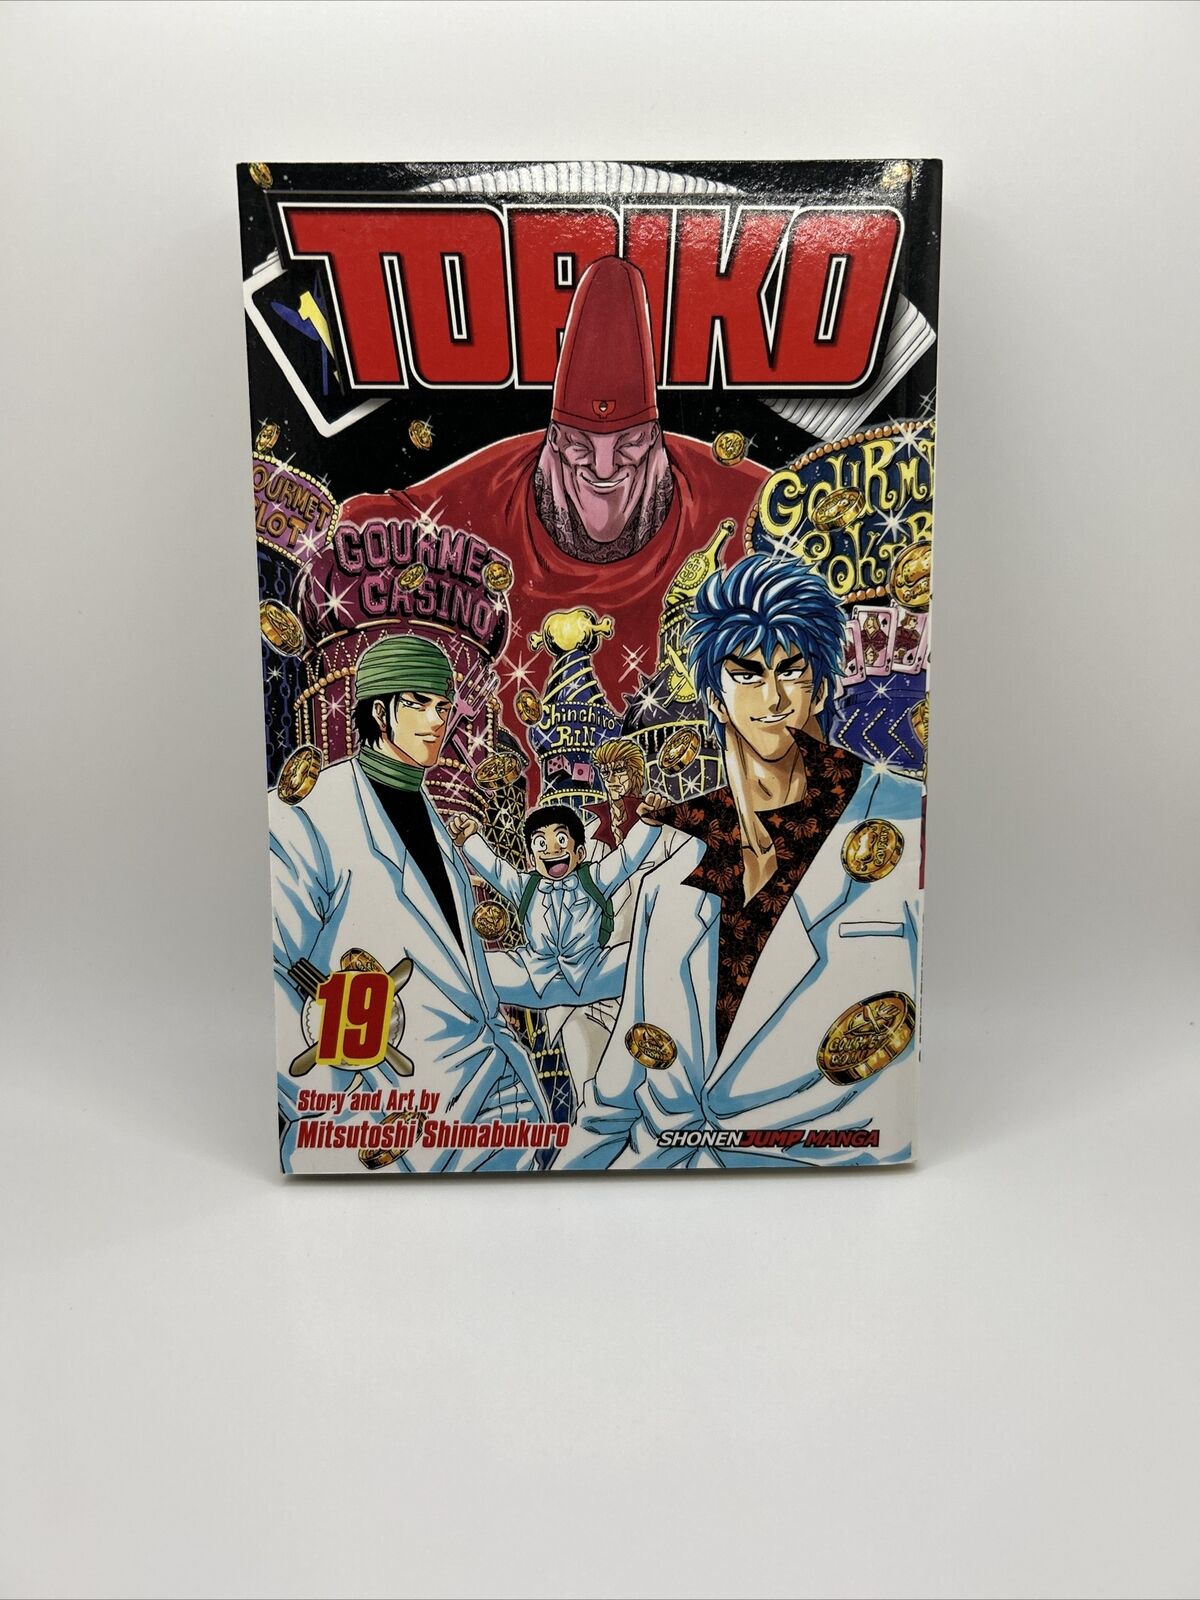 Toriko Volume 19 Manga English Volume Shonen Jump Printed December 2013